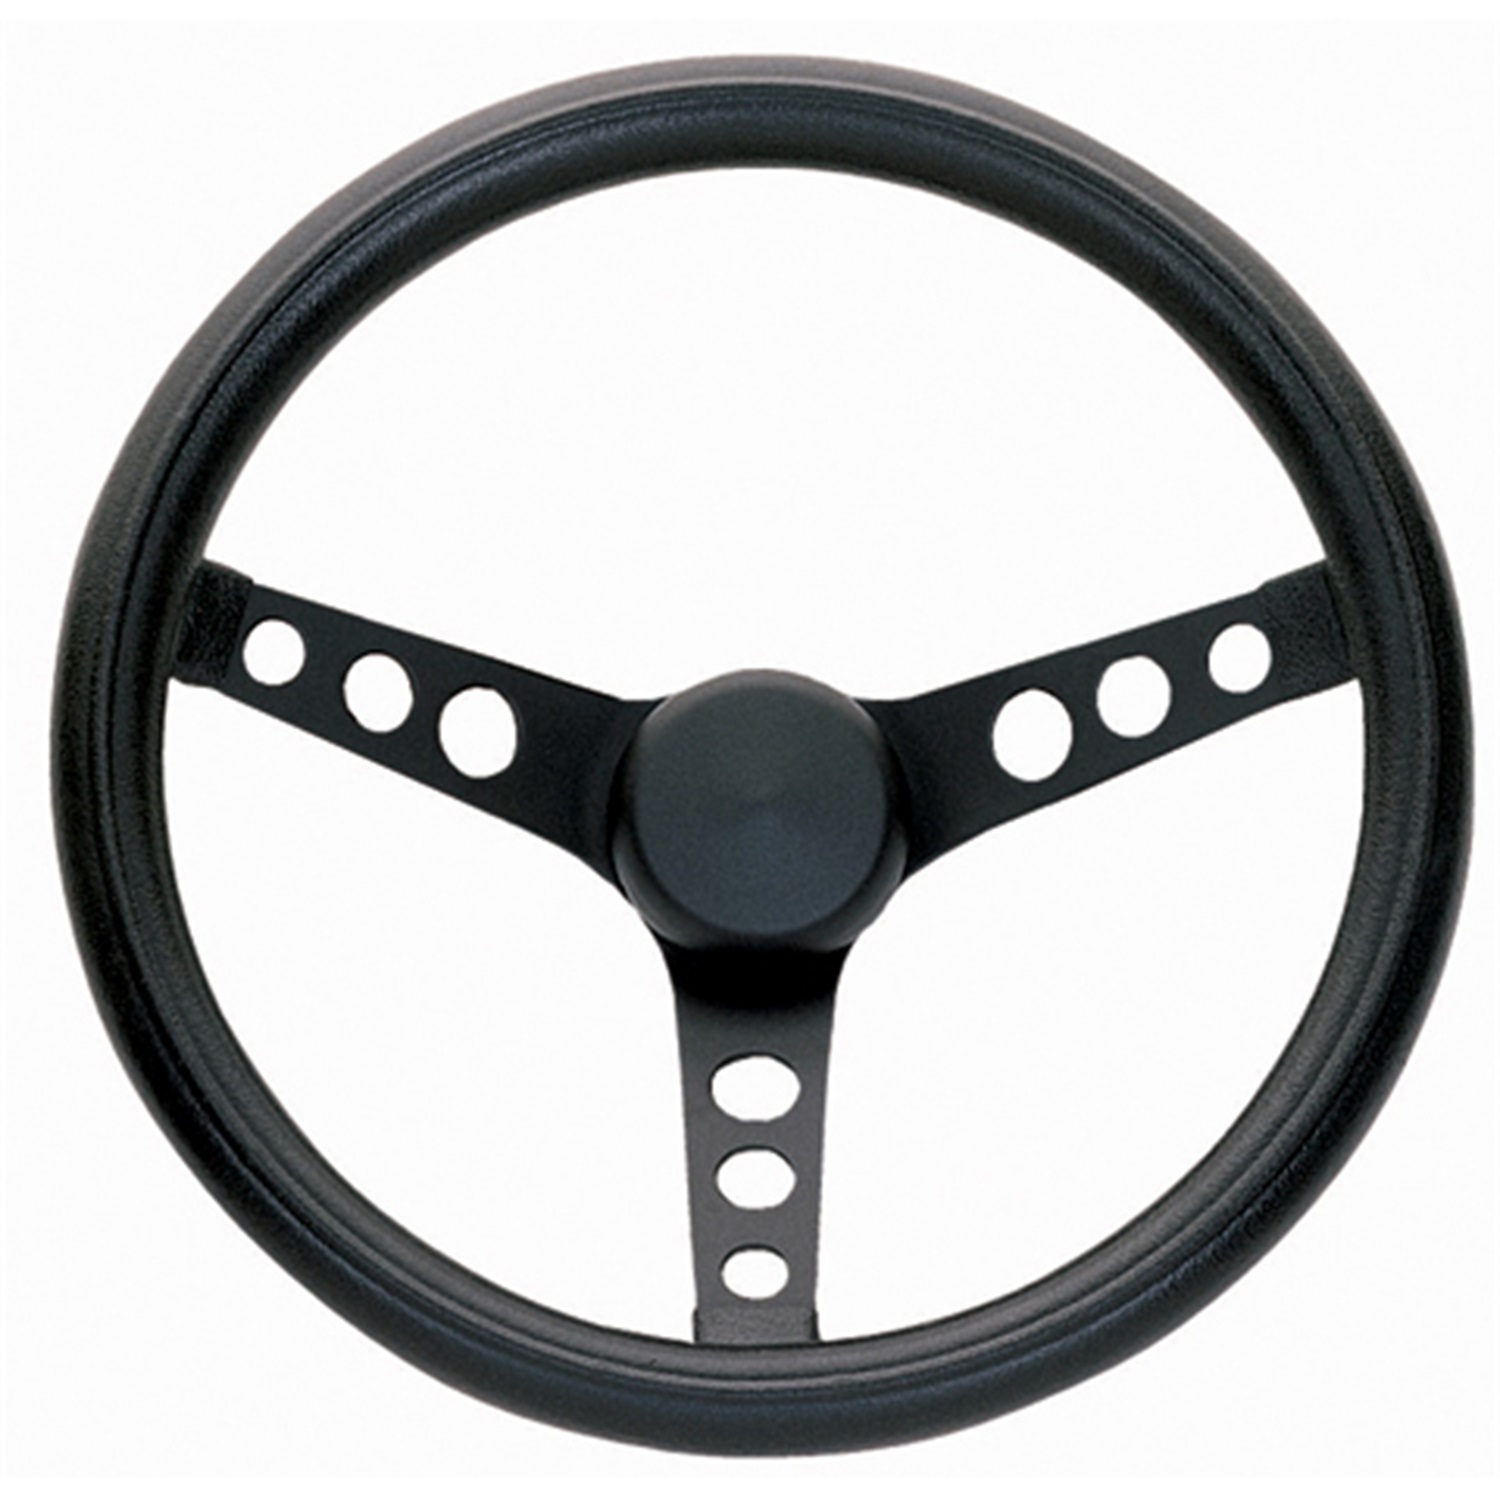 Grant 338 Classic Series Steering Wheel